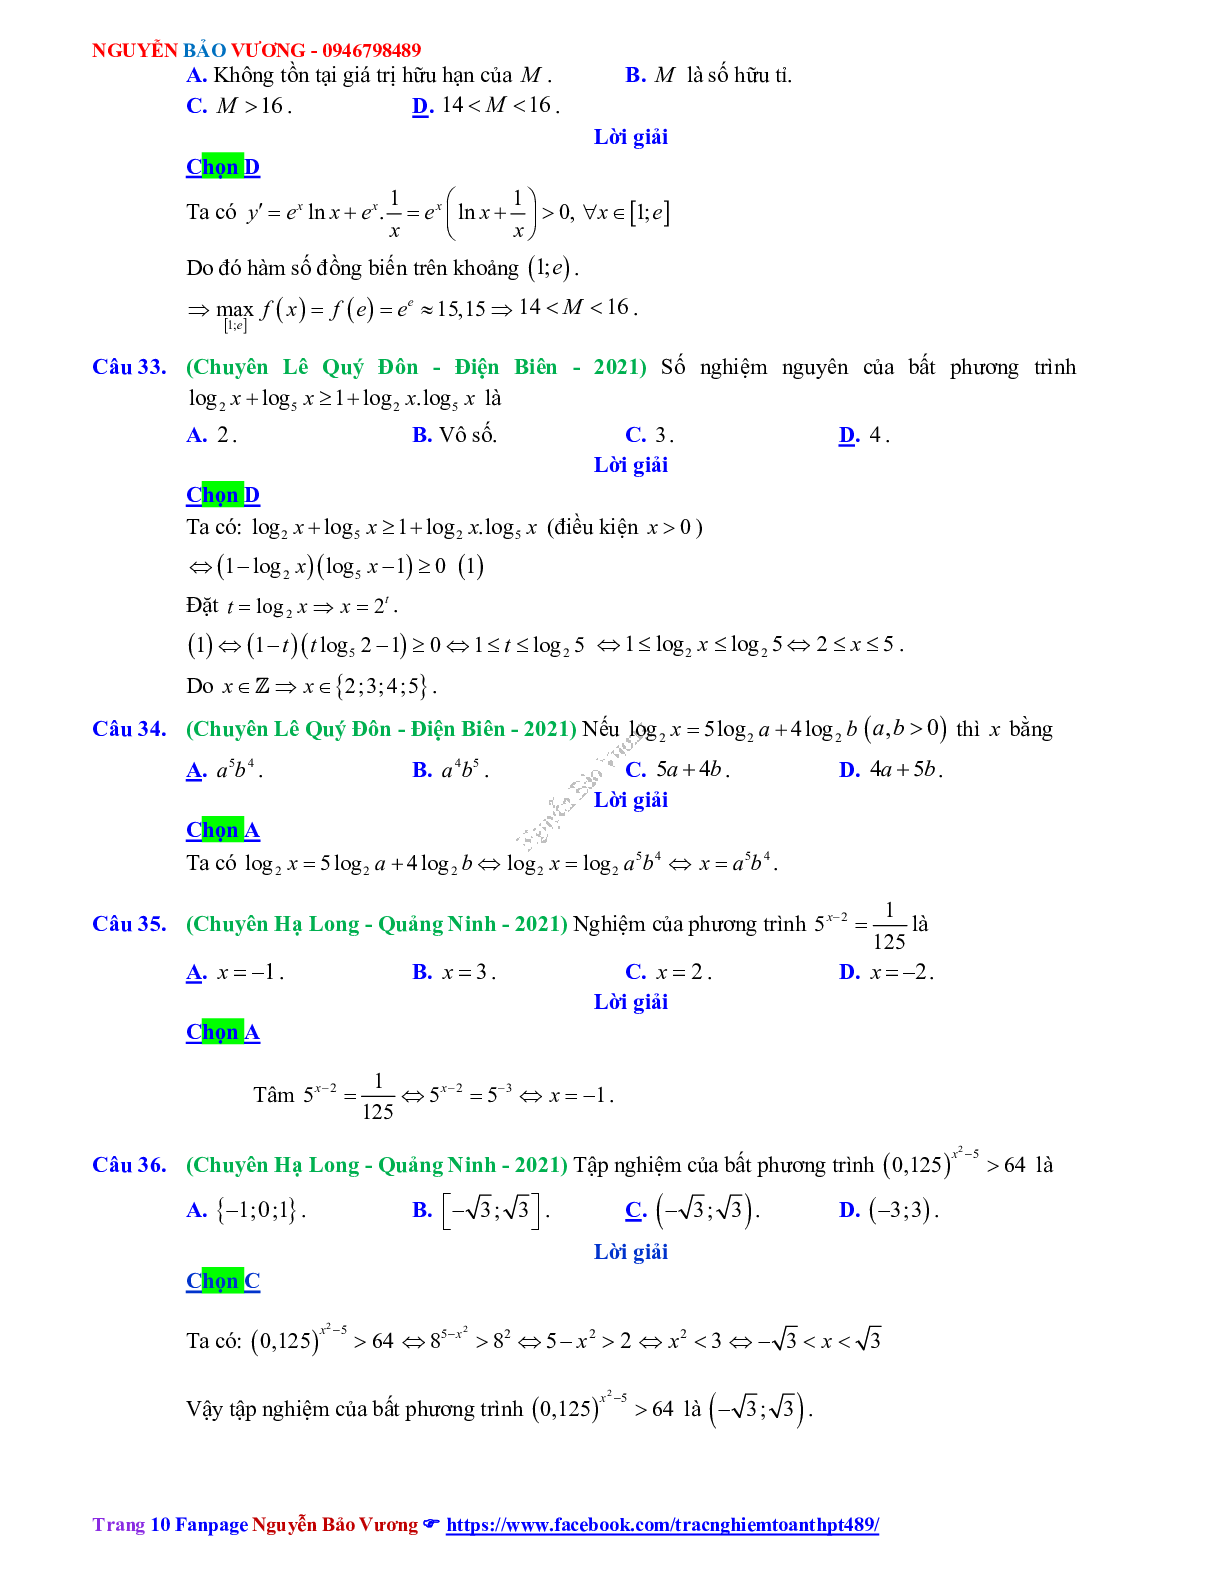 Trắc nghiệm Ôn thi THPT QG Toán 12: Đáp án mũ - lũy thừa - logarit mức độ thông hiểu (trang 10)